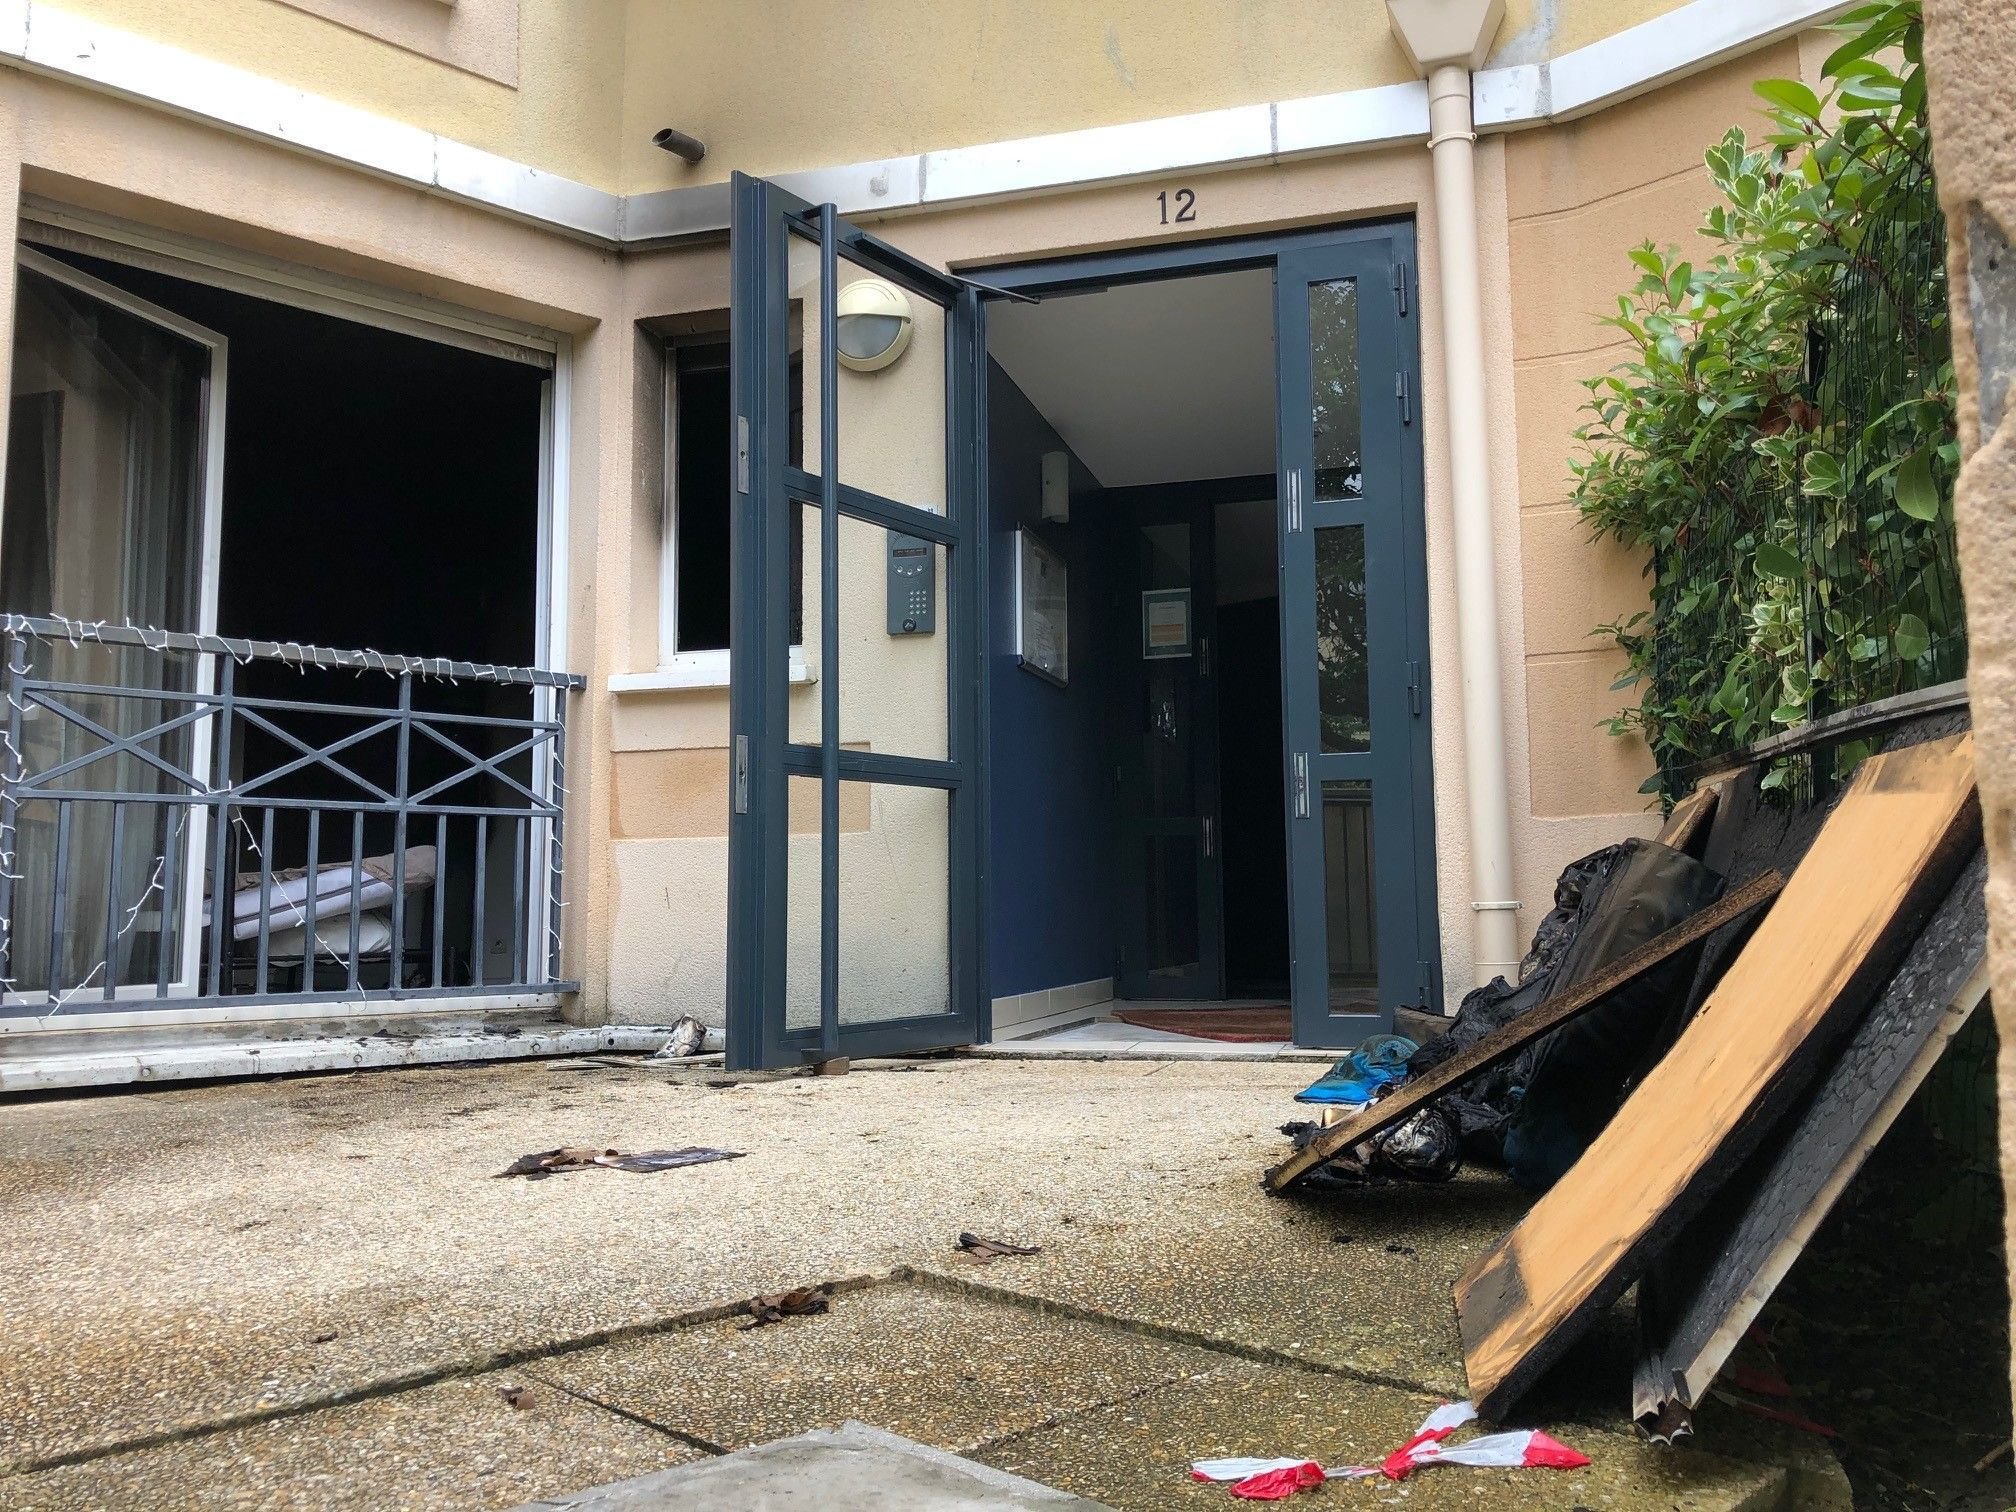 Corbeil-Essonnes, jeudi 15 juillet 2021. L'incendie, qui n'a pas fait de victime, s'est déclaré dans un logement de la rue René-Cassin.